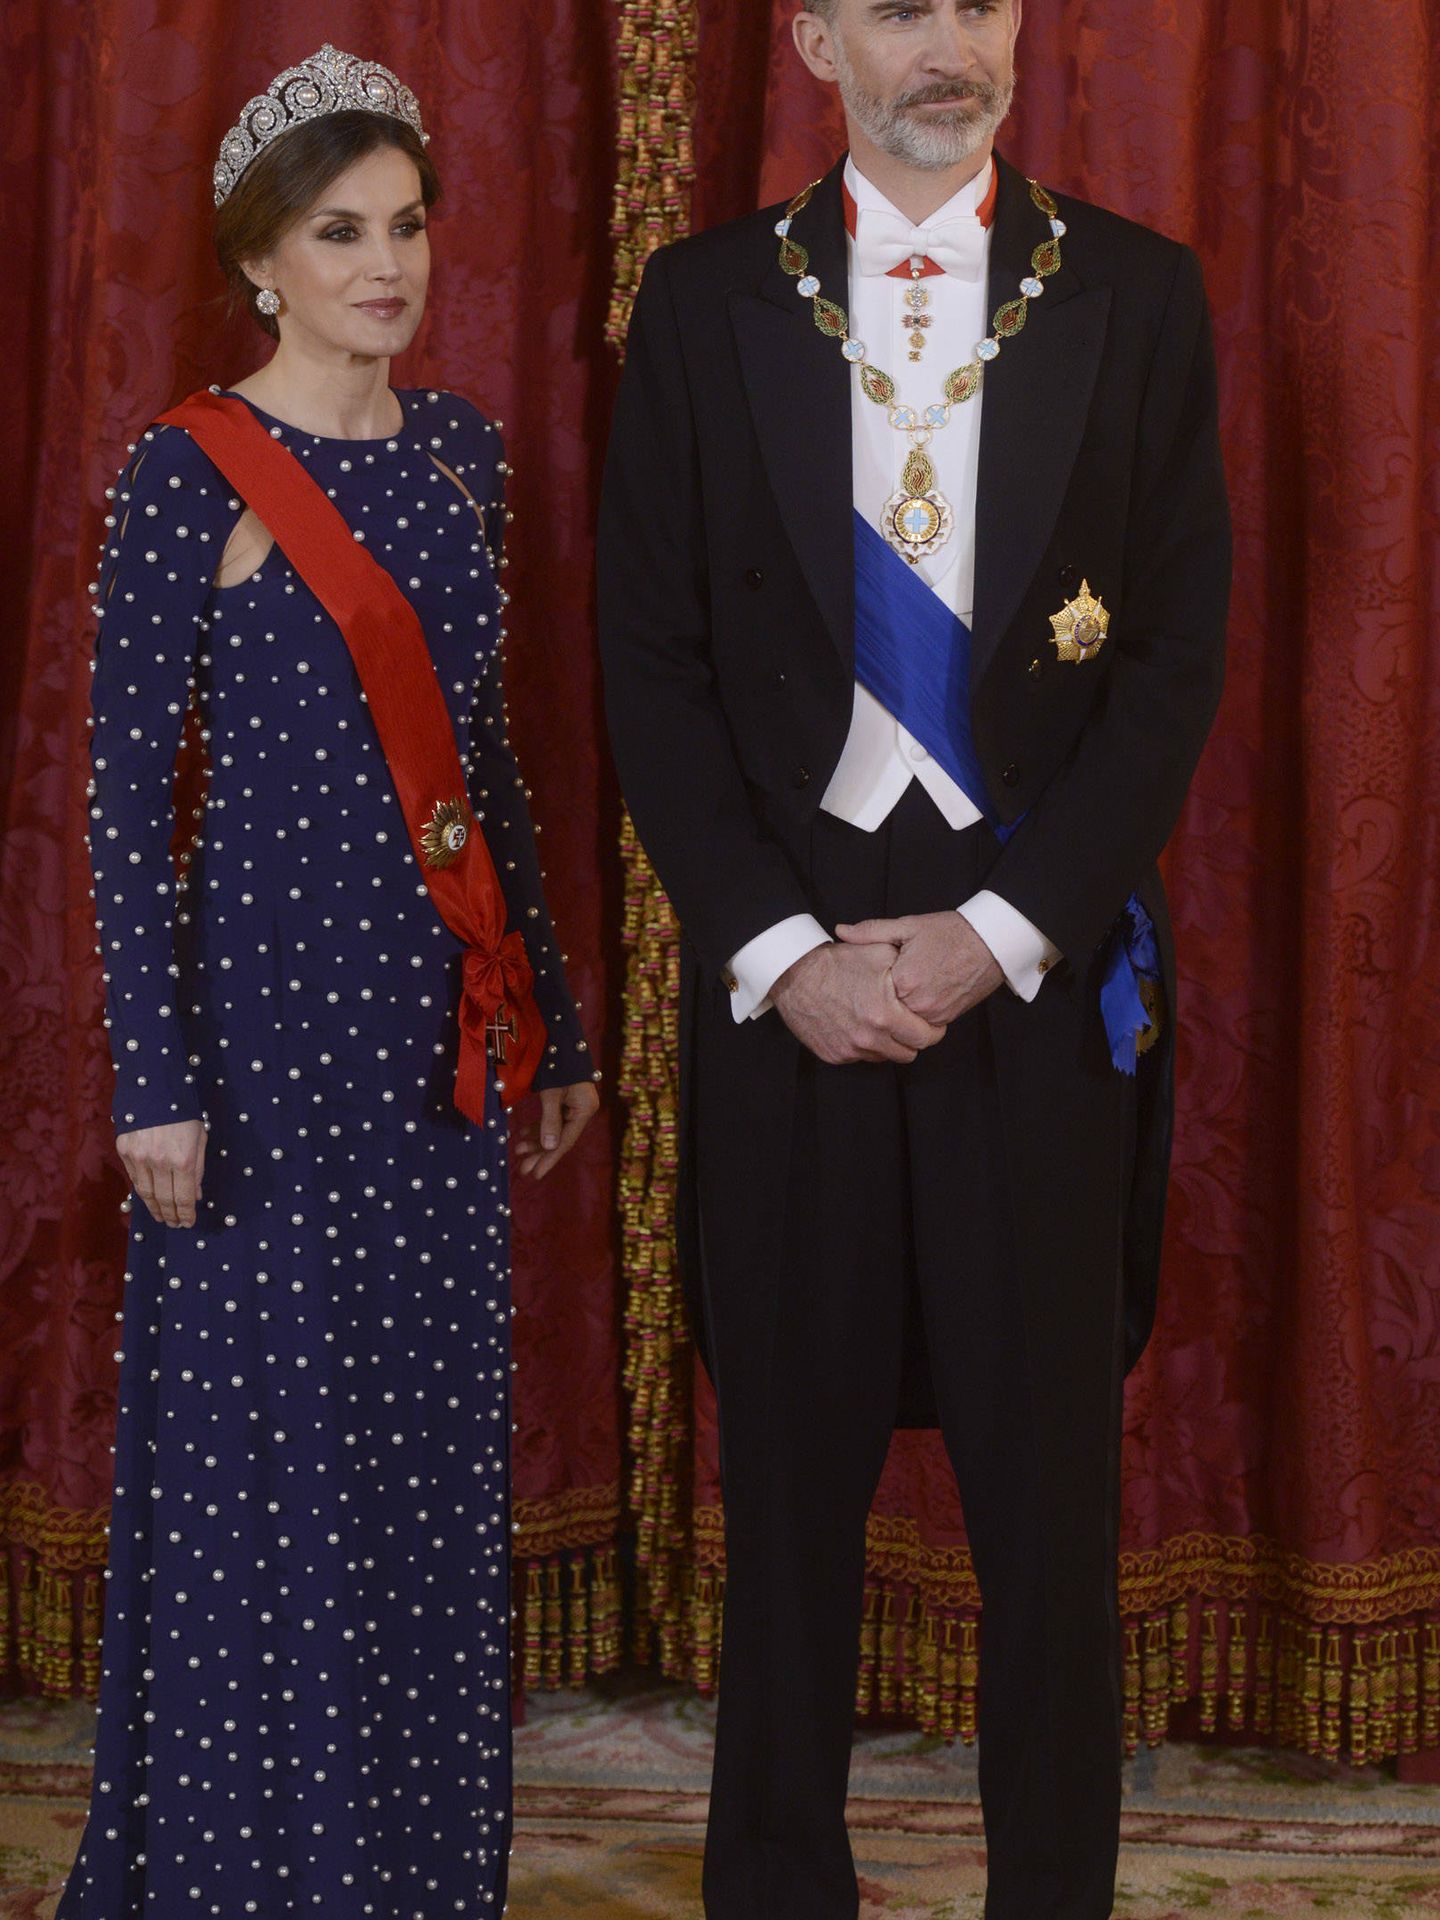 Detalle del look completo de la Reina que posa junto al Monarca. (Getty)